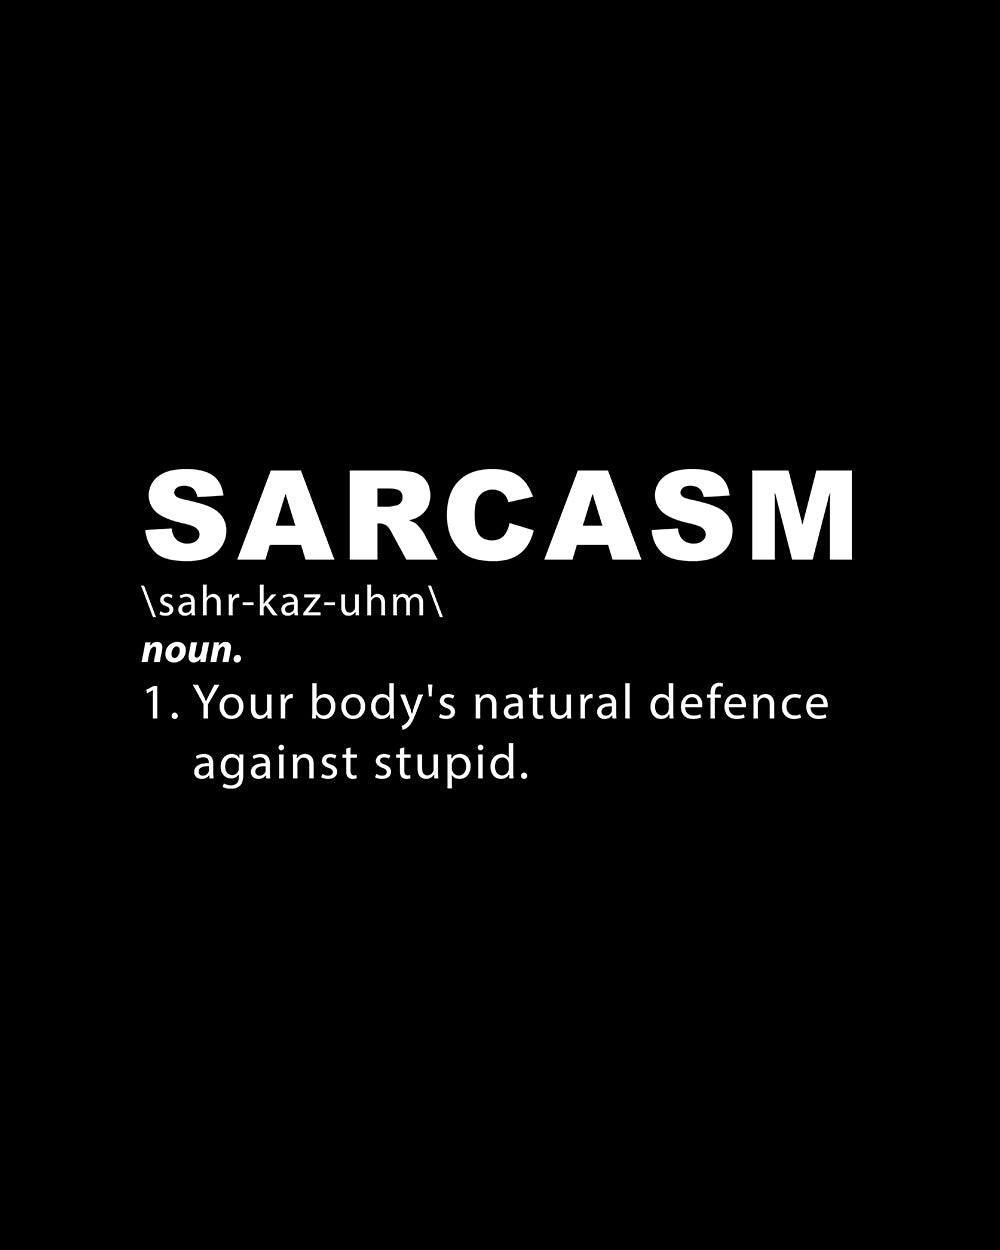 Sarcasm T-Shirt Europe Online #colour_black